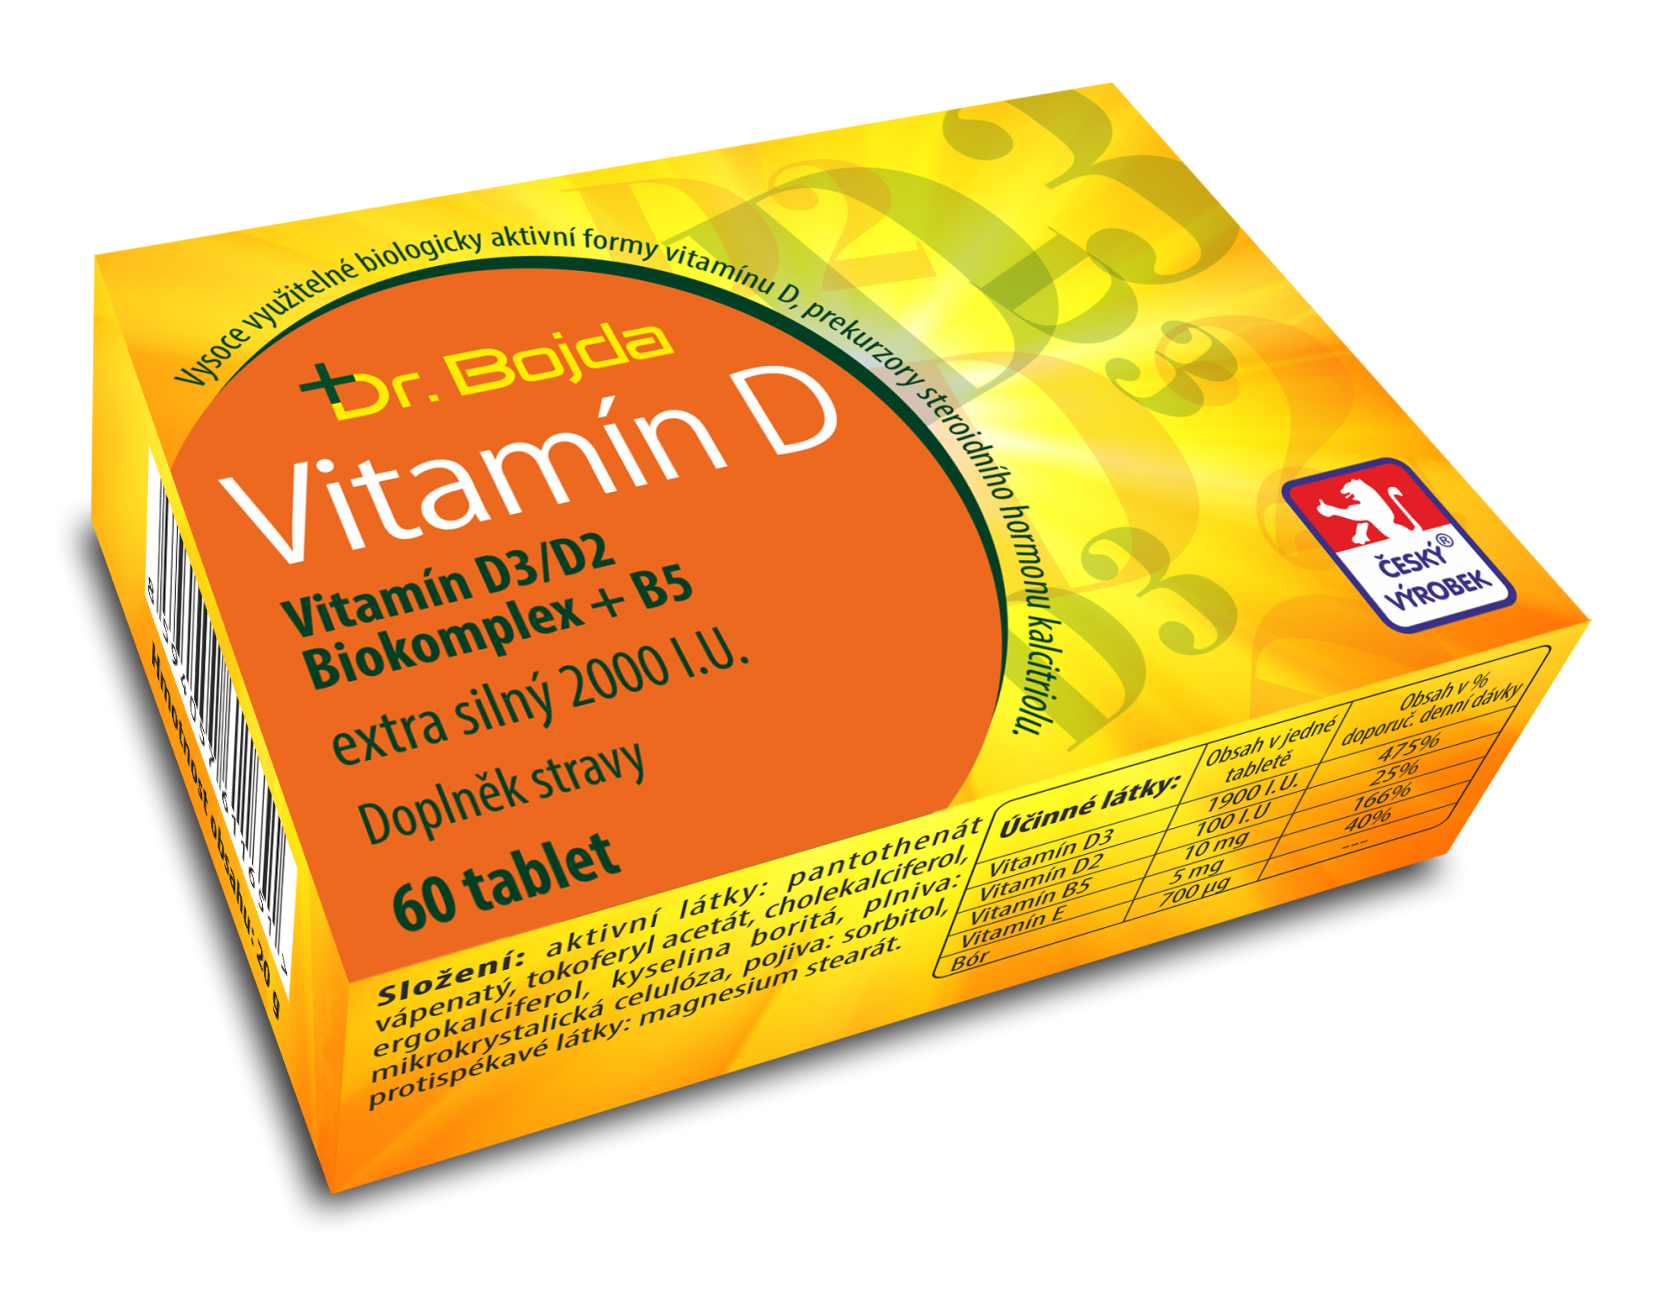 Dr. Bojda Vitamín D3/D2 Biokomplex + B5 extra silný 2000 I.U. 60 tbl.